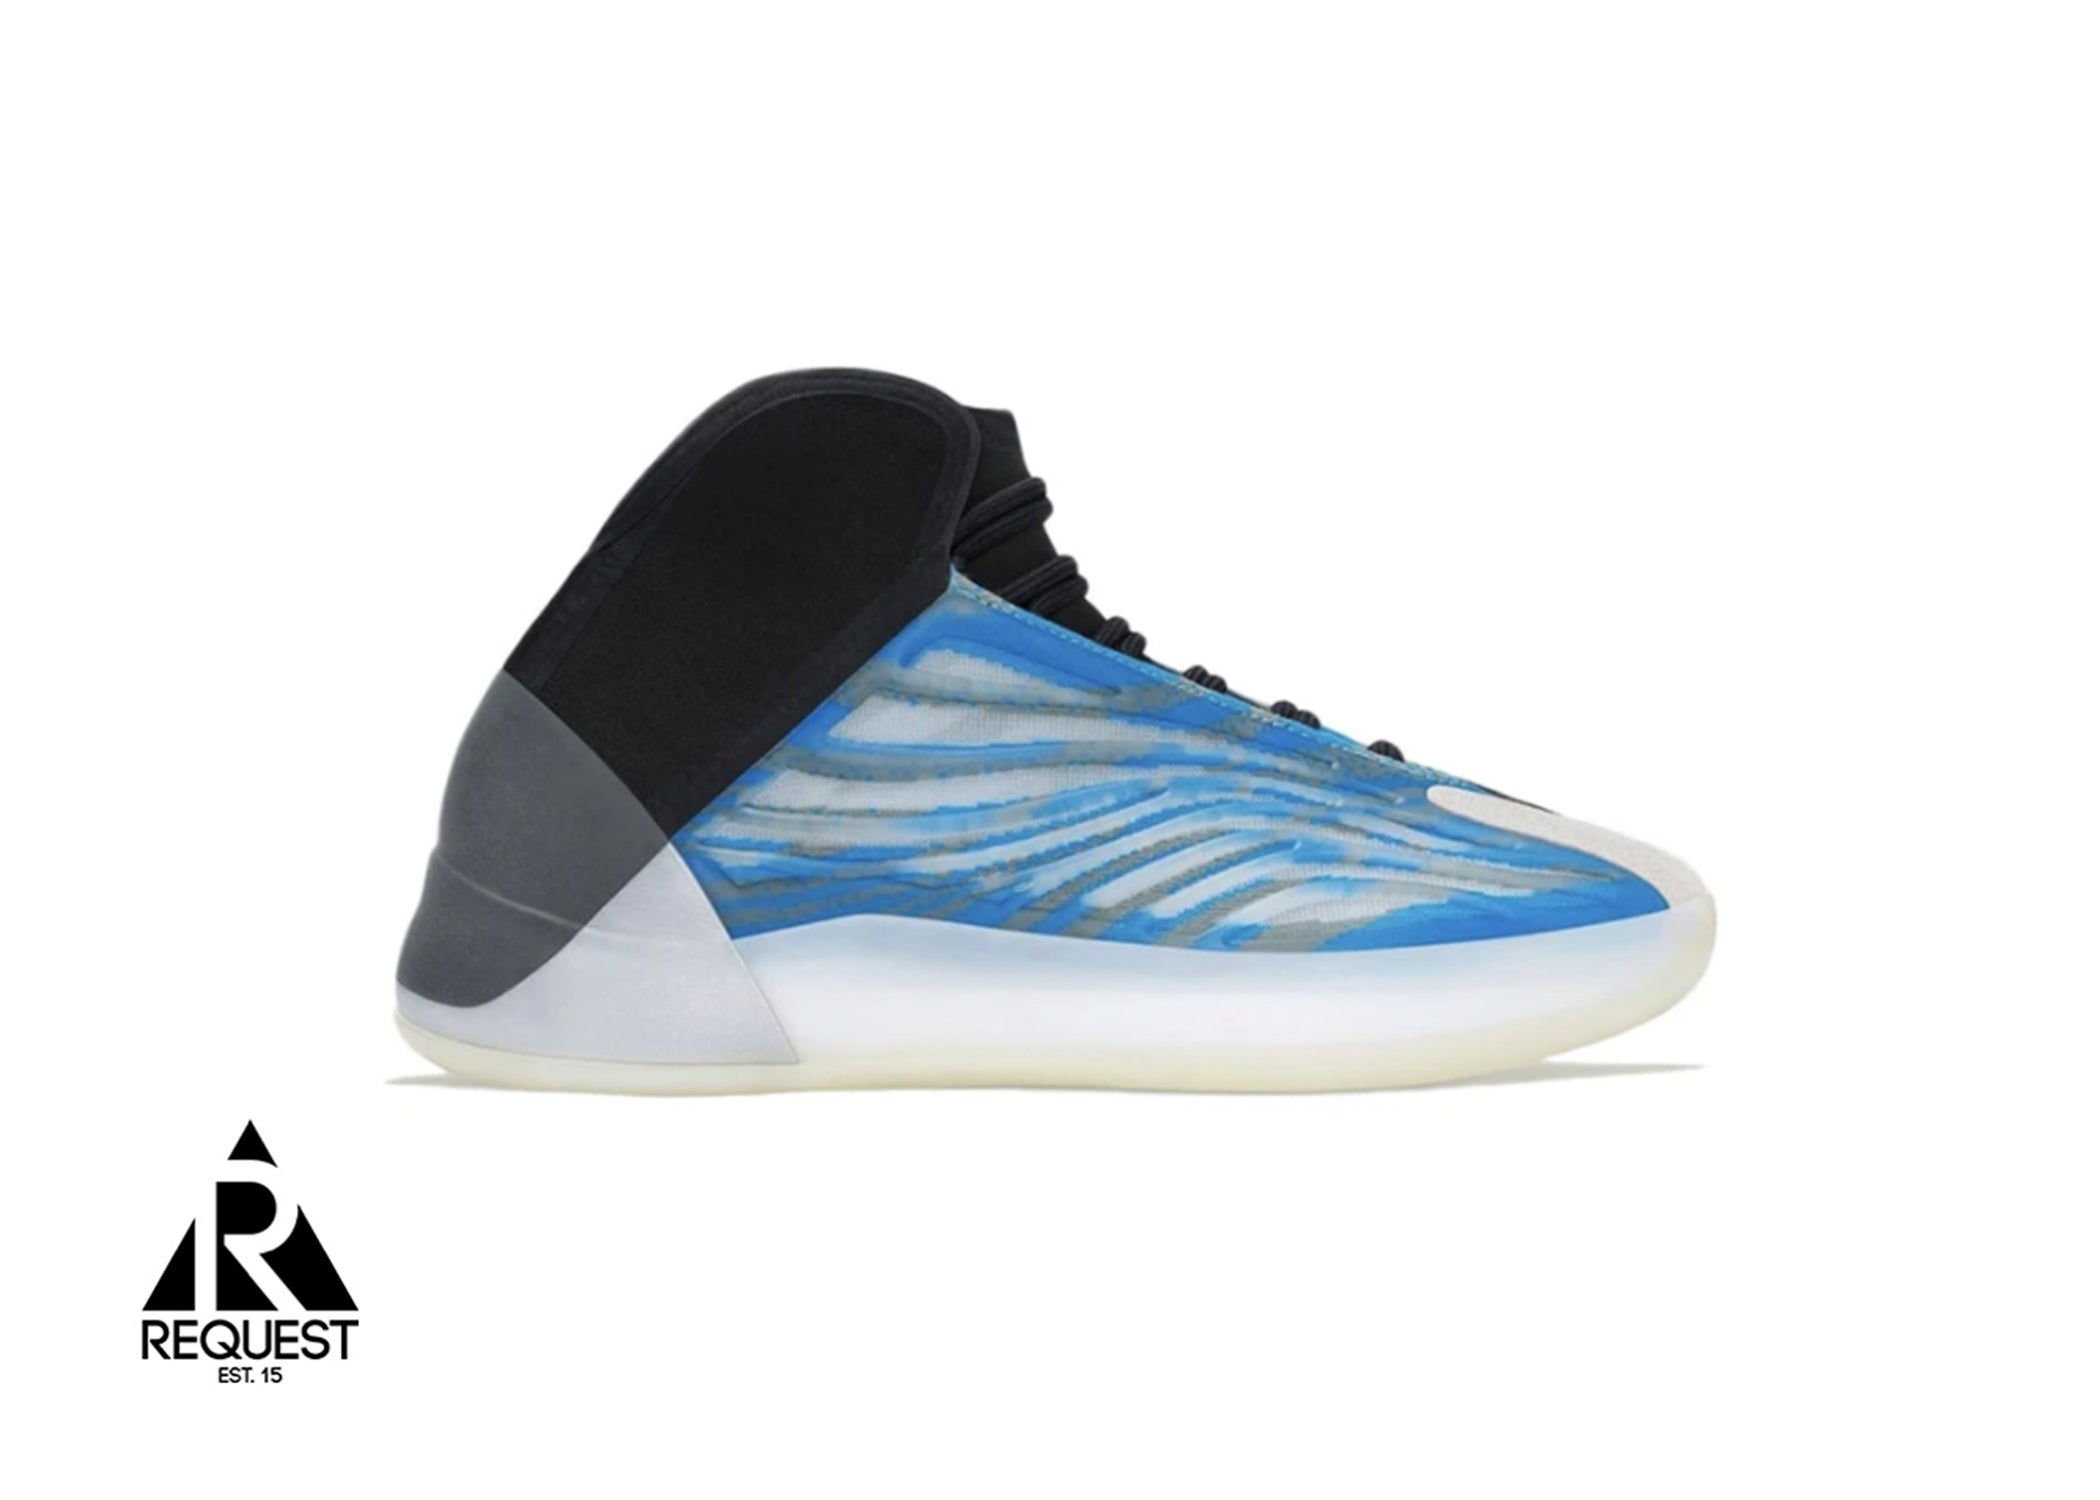 Adidas Boost QNTM “Frozen Blue”